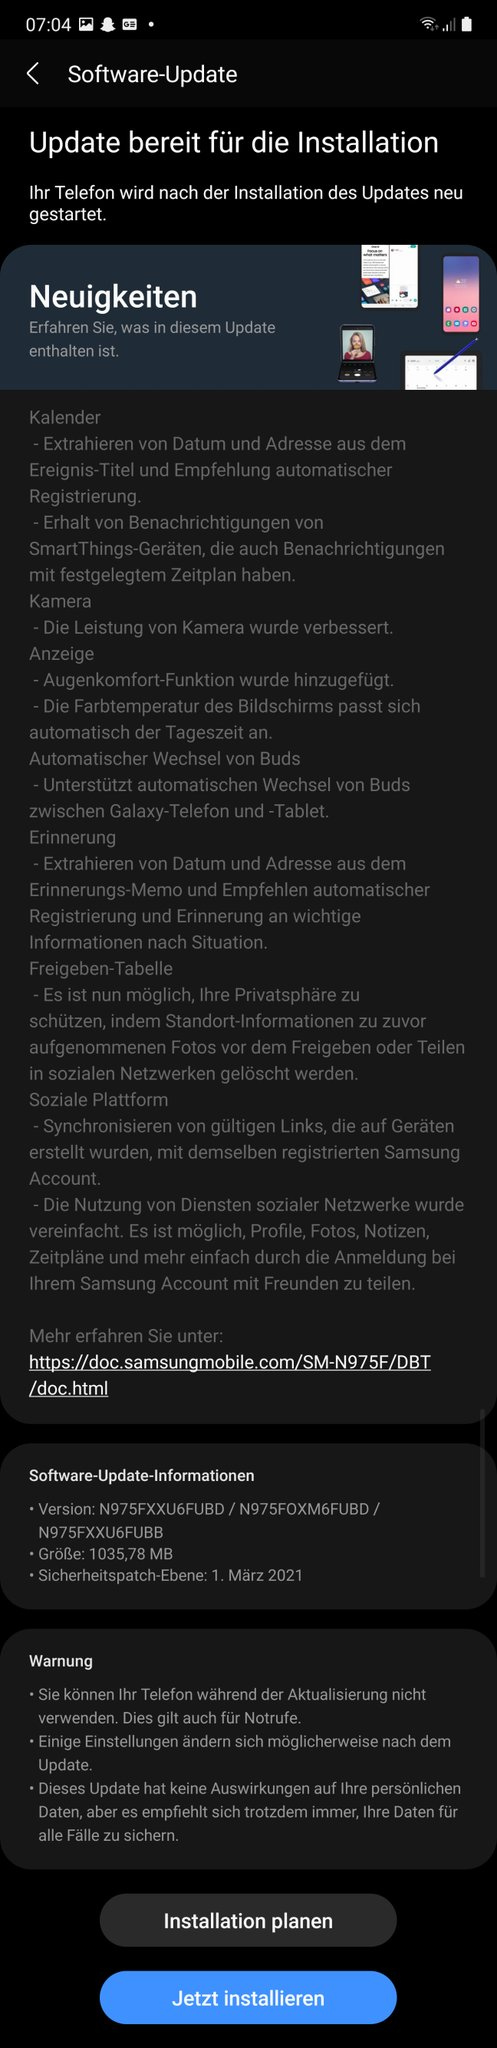 Samsung Galaxy Note 10+ One UI 3.1 Update Changelog